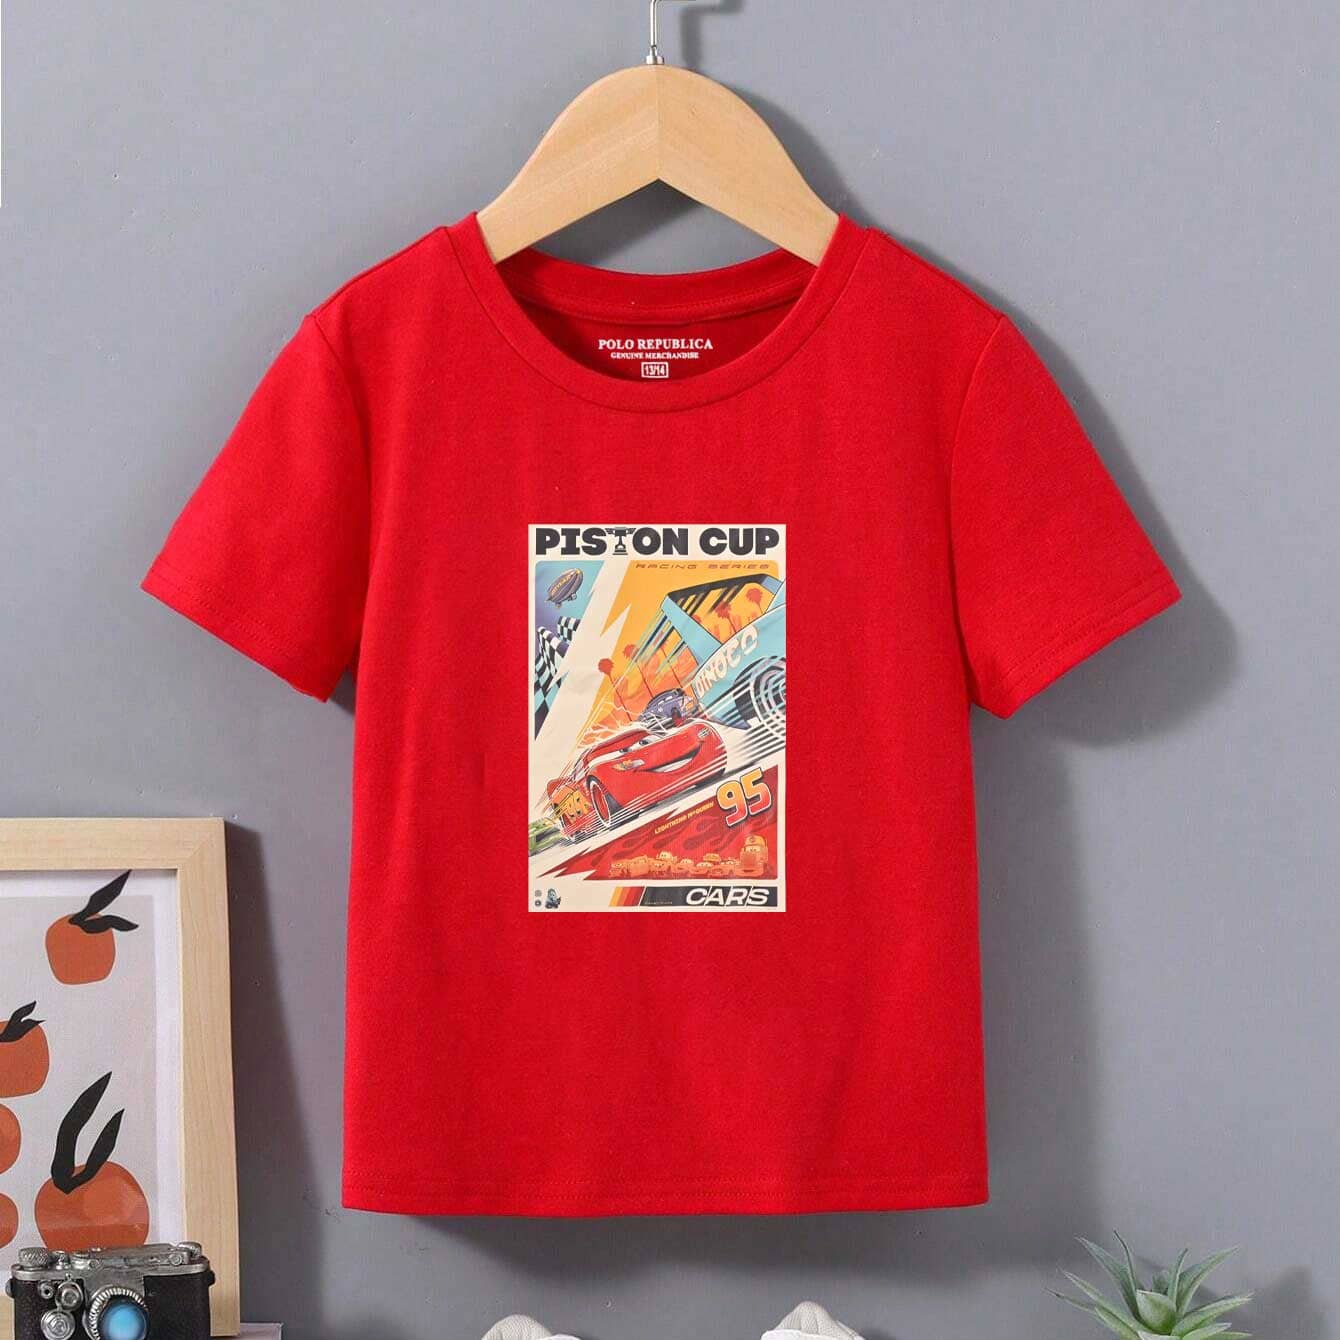 Polo Republica Boy's Piston Cup Printed Tee Shirt Boy's Tee Shirt Polo Republica Red 1-2 Years 